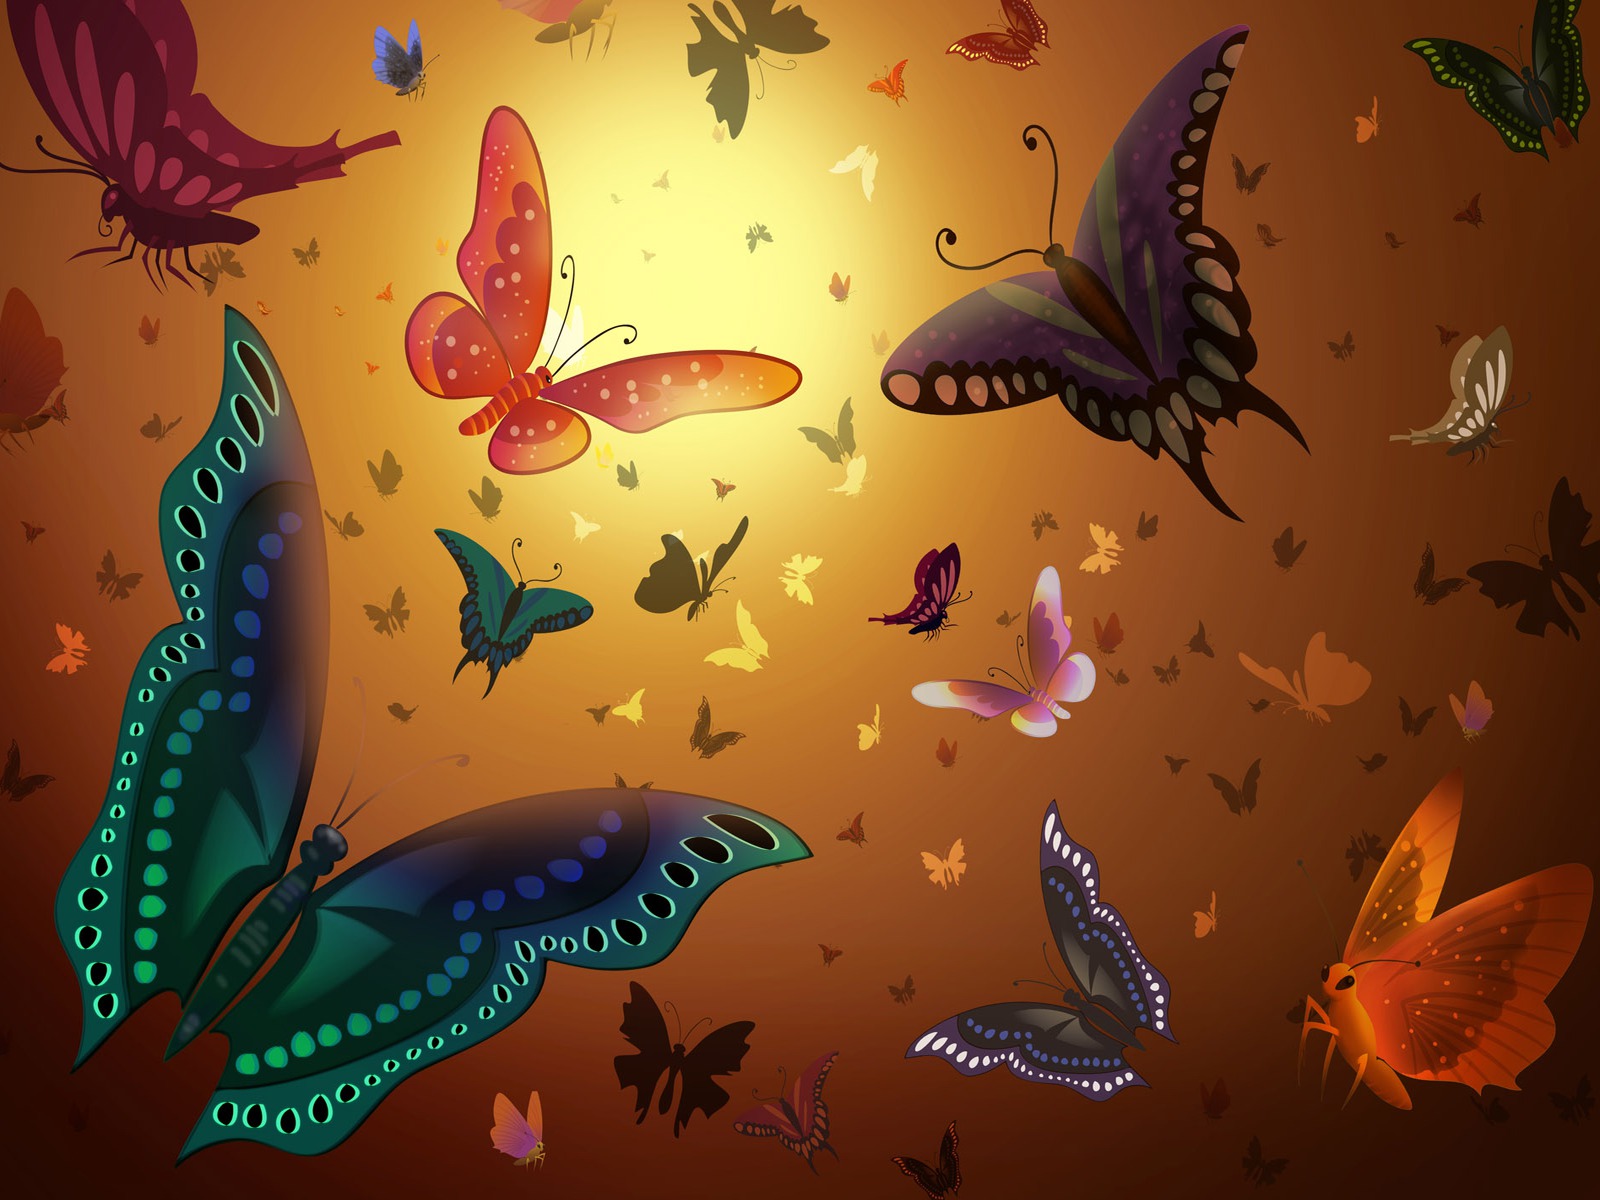 masaüstü wallpaper hd,butterfly,insect,moths and butterflies,organism,design